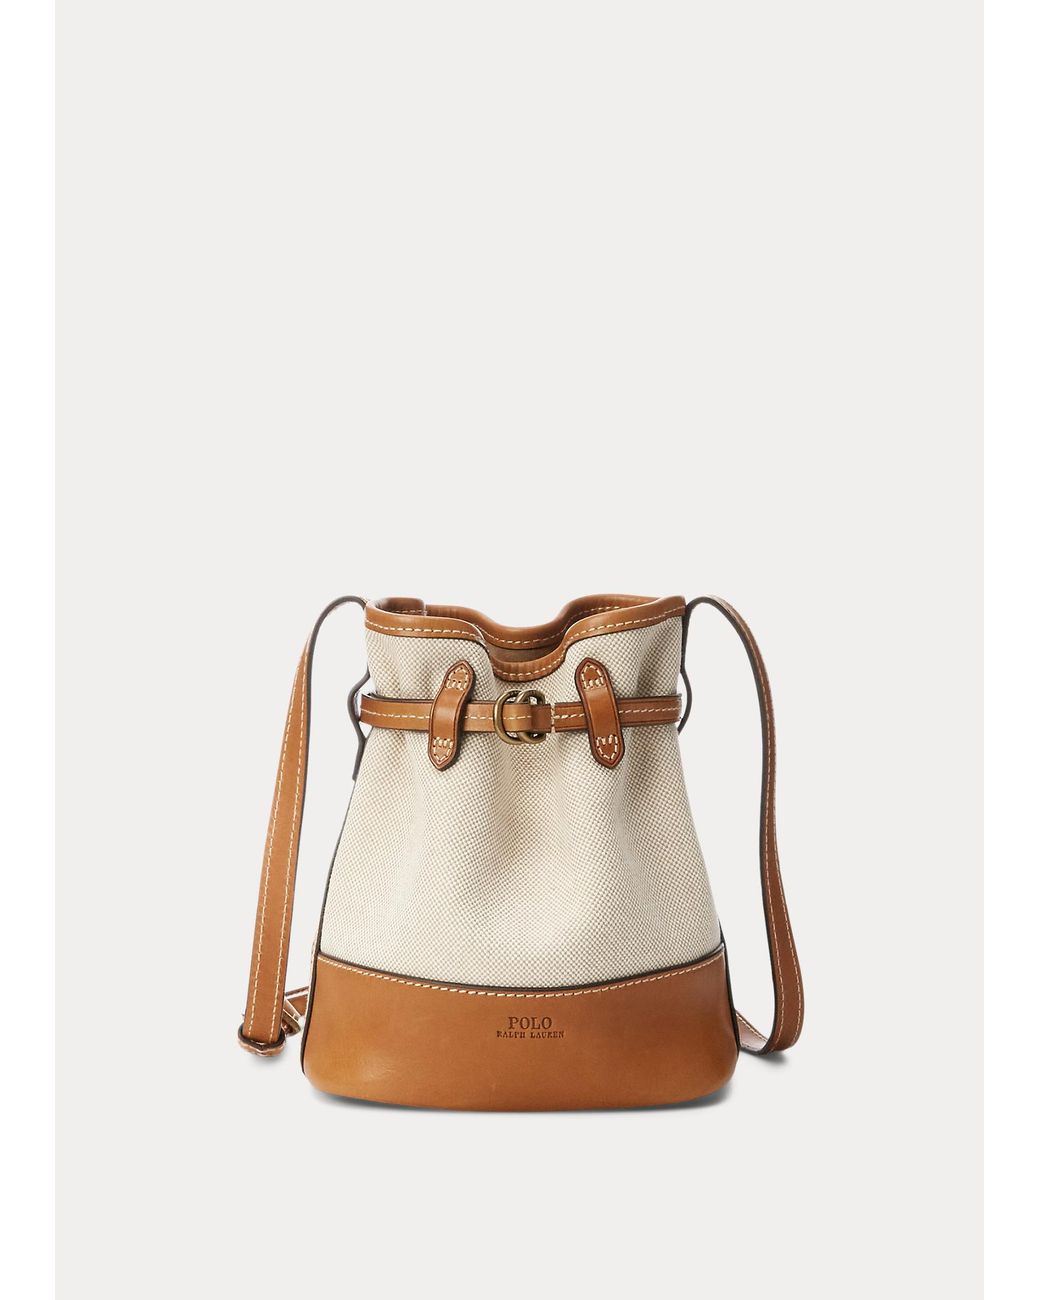 Polo Ralph Lauren Canvas Small Bellport Bucket Bag in Natural | Lyst UK